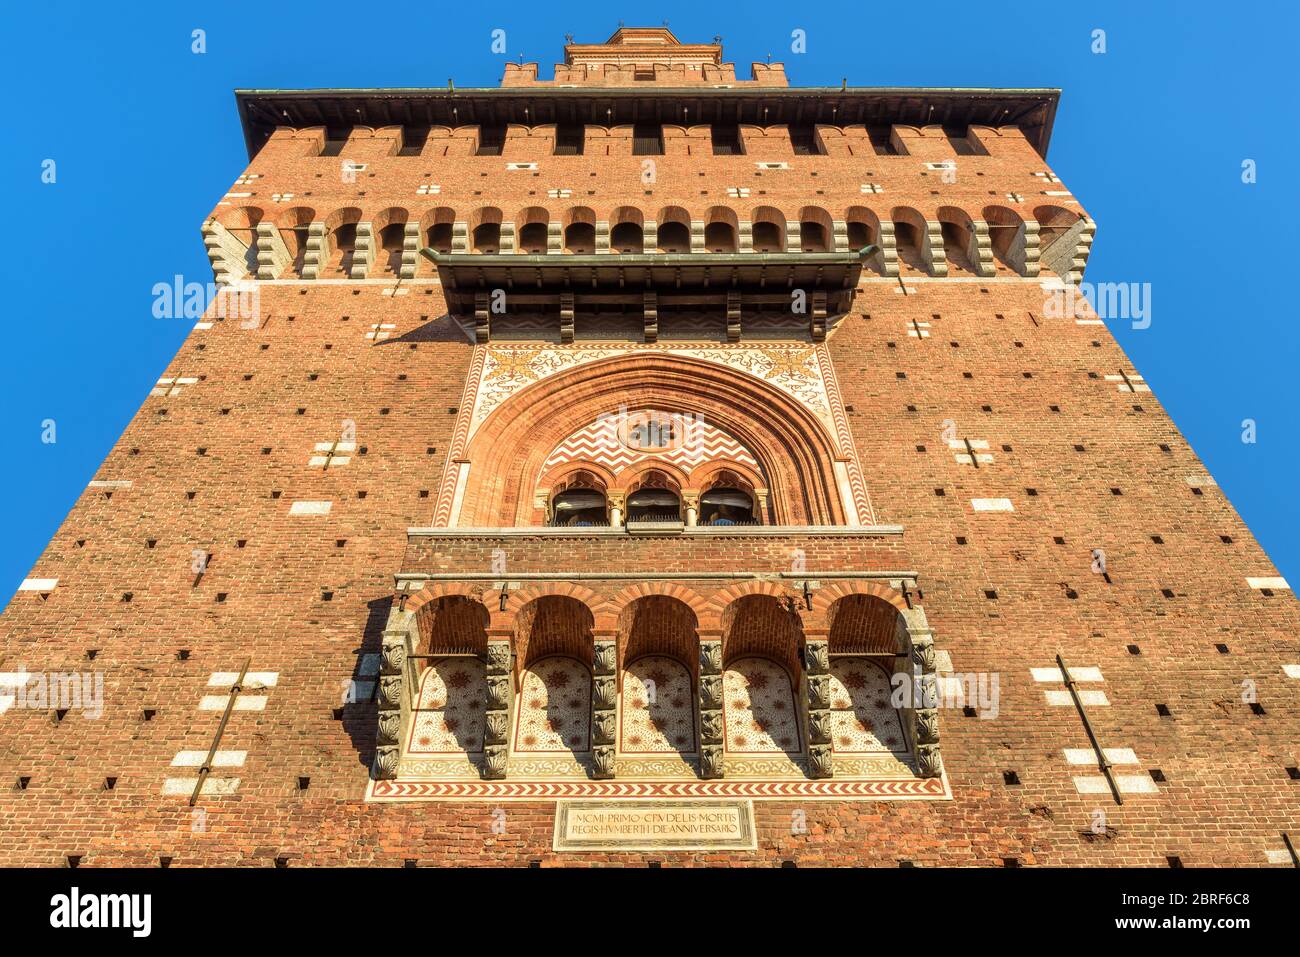 Primo piano del Castello Sforzesco, Milano, Italia. E' un famoso punto di riferimento della citta'. Vista dal basso della torre principale in estate. Architettura rinascimentale a Milano Foto Stock